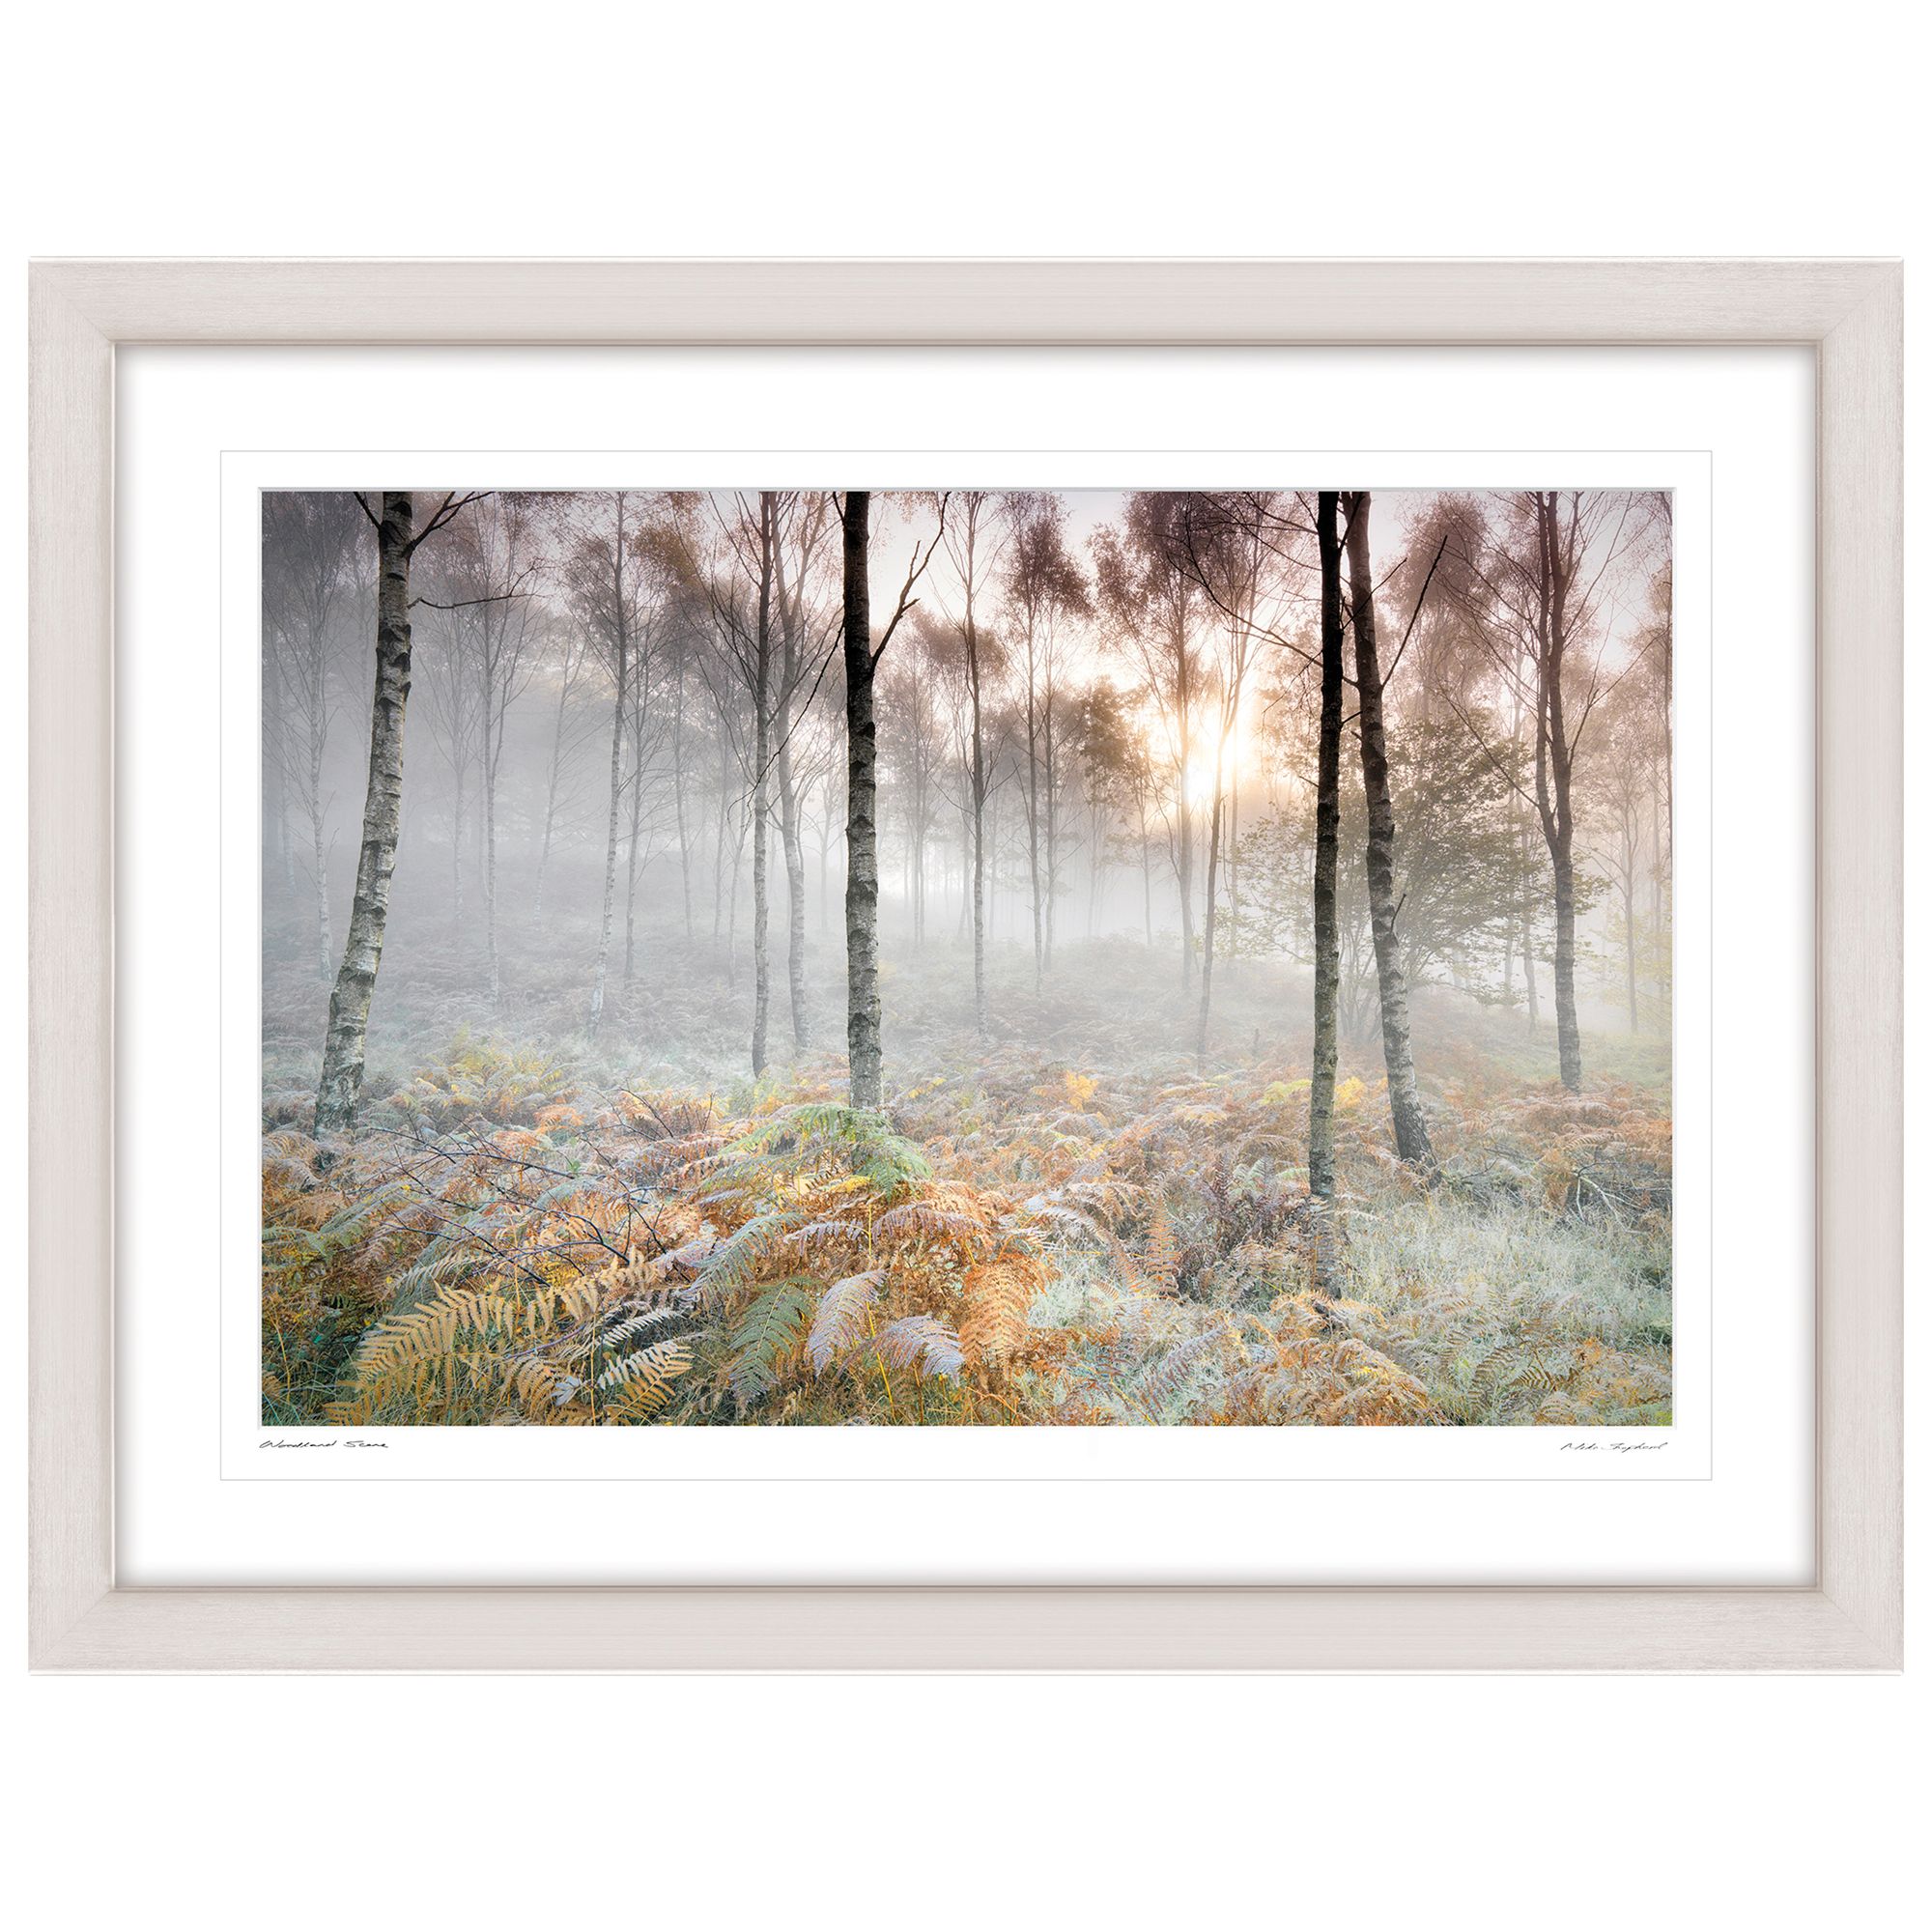 Buy Mike Shepherd - Woodland Scene Framed Print, 81 x 107cm | John Lewis